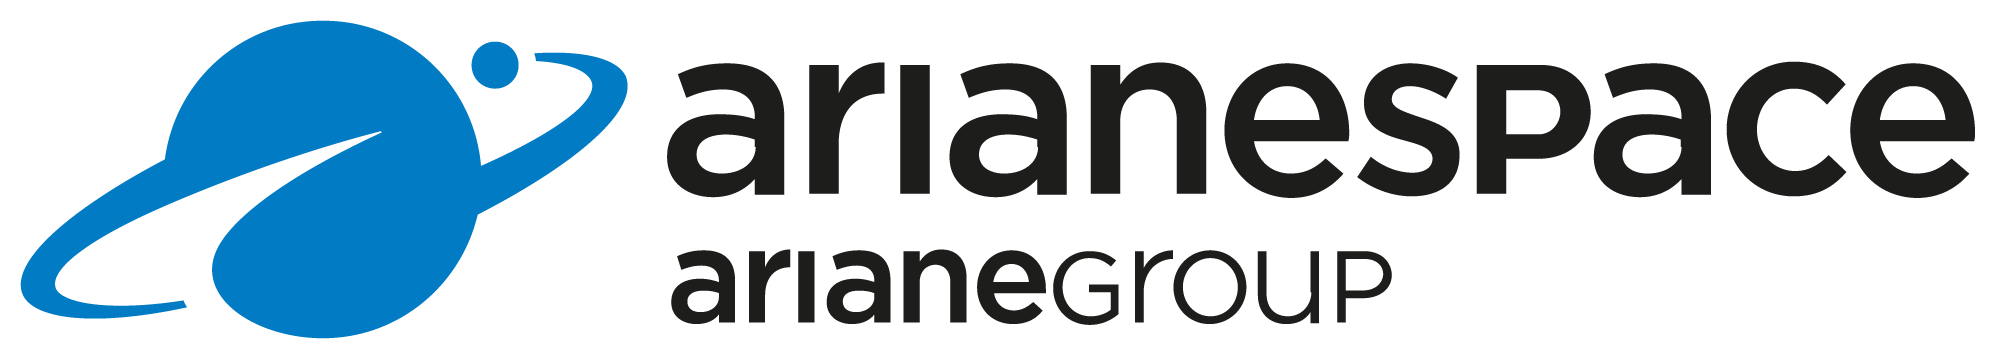 ArianeGroup (Arianespace)